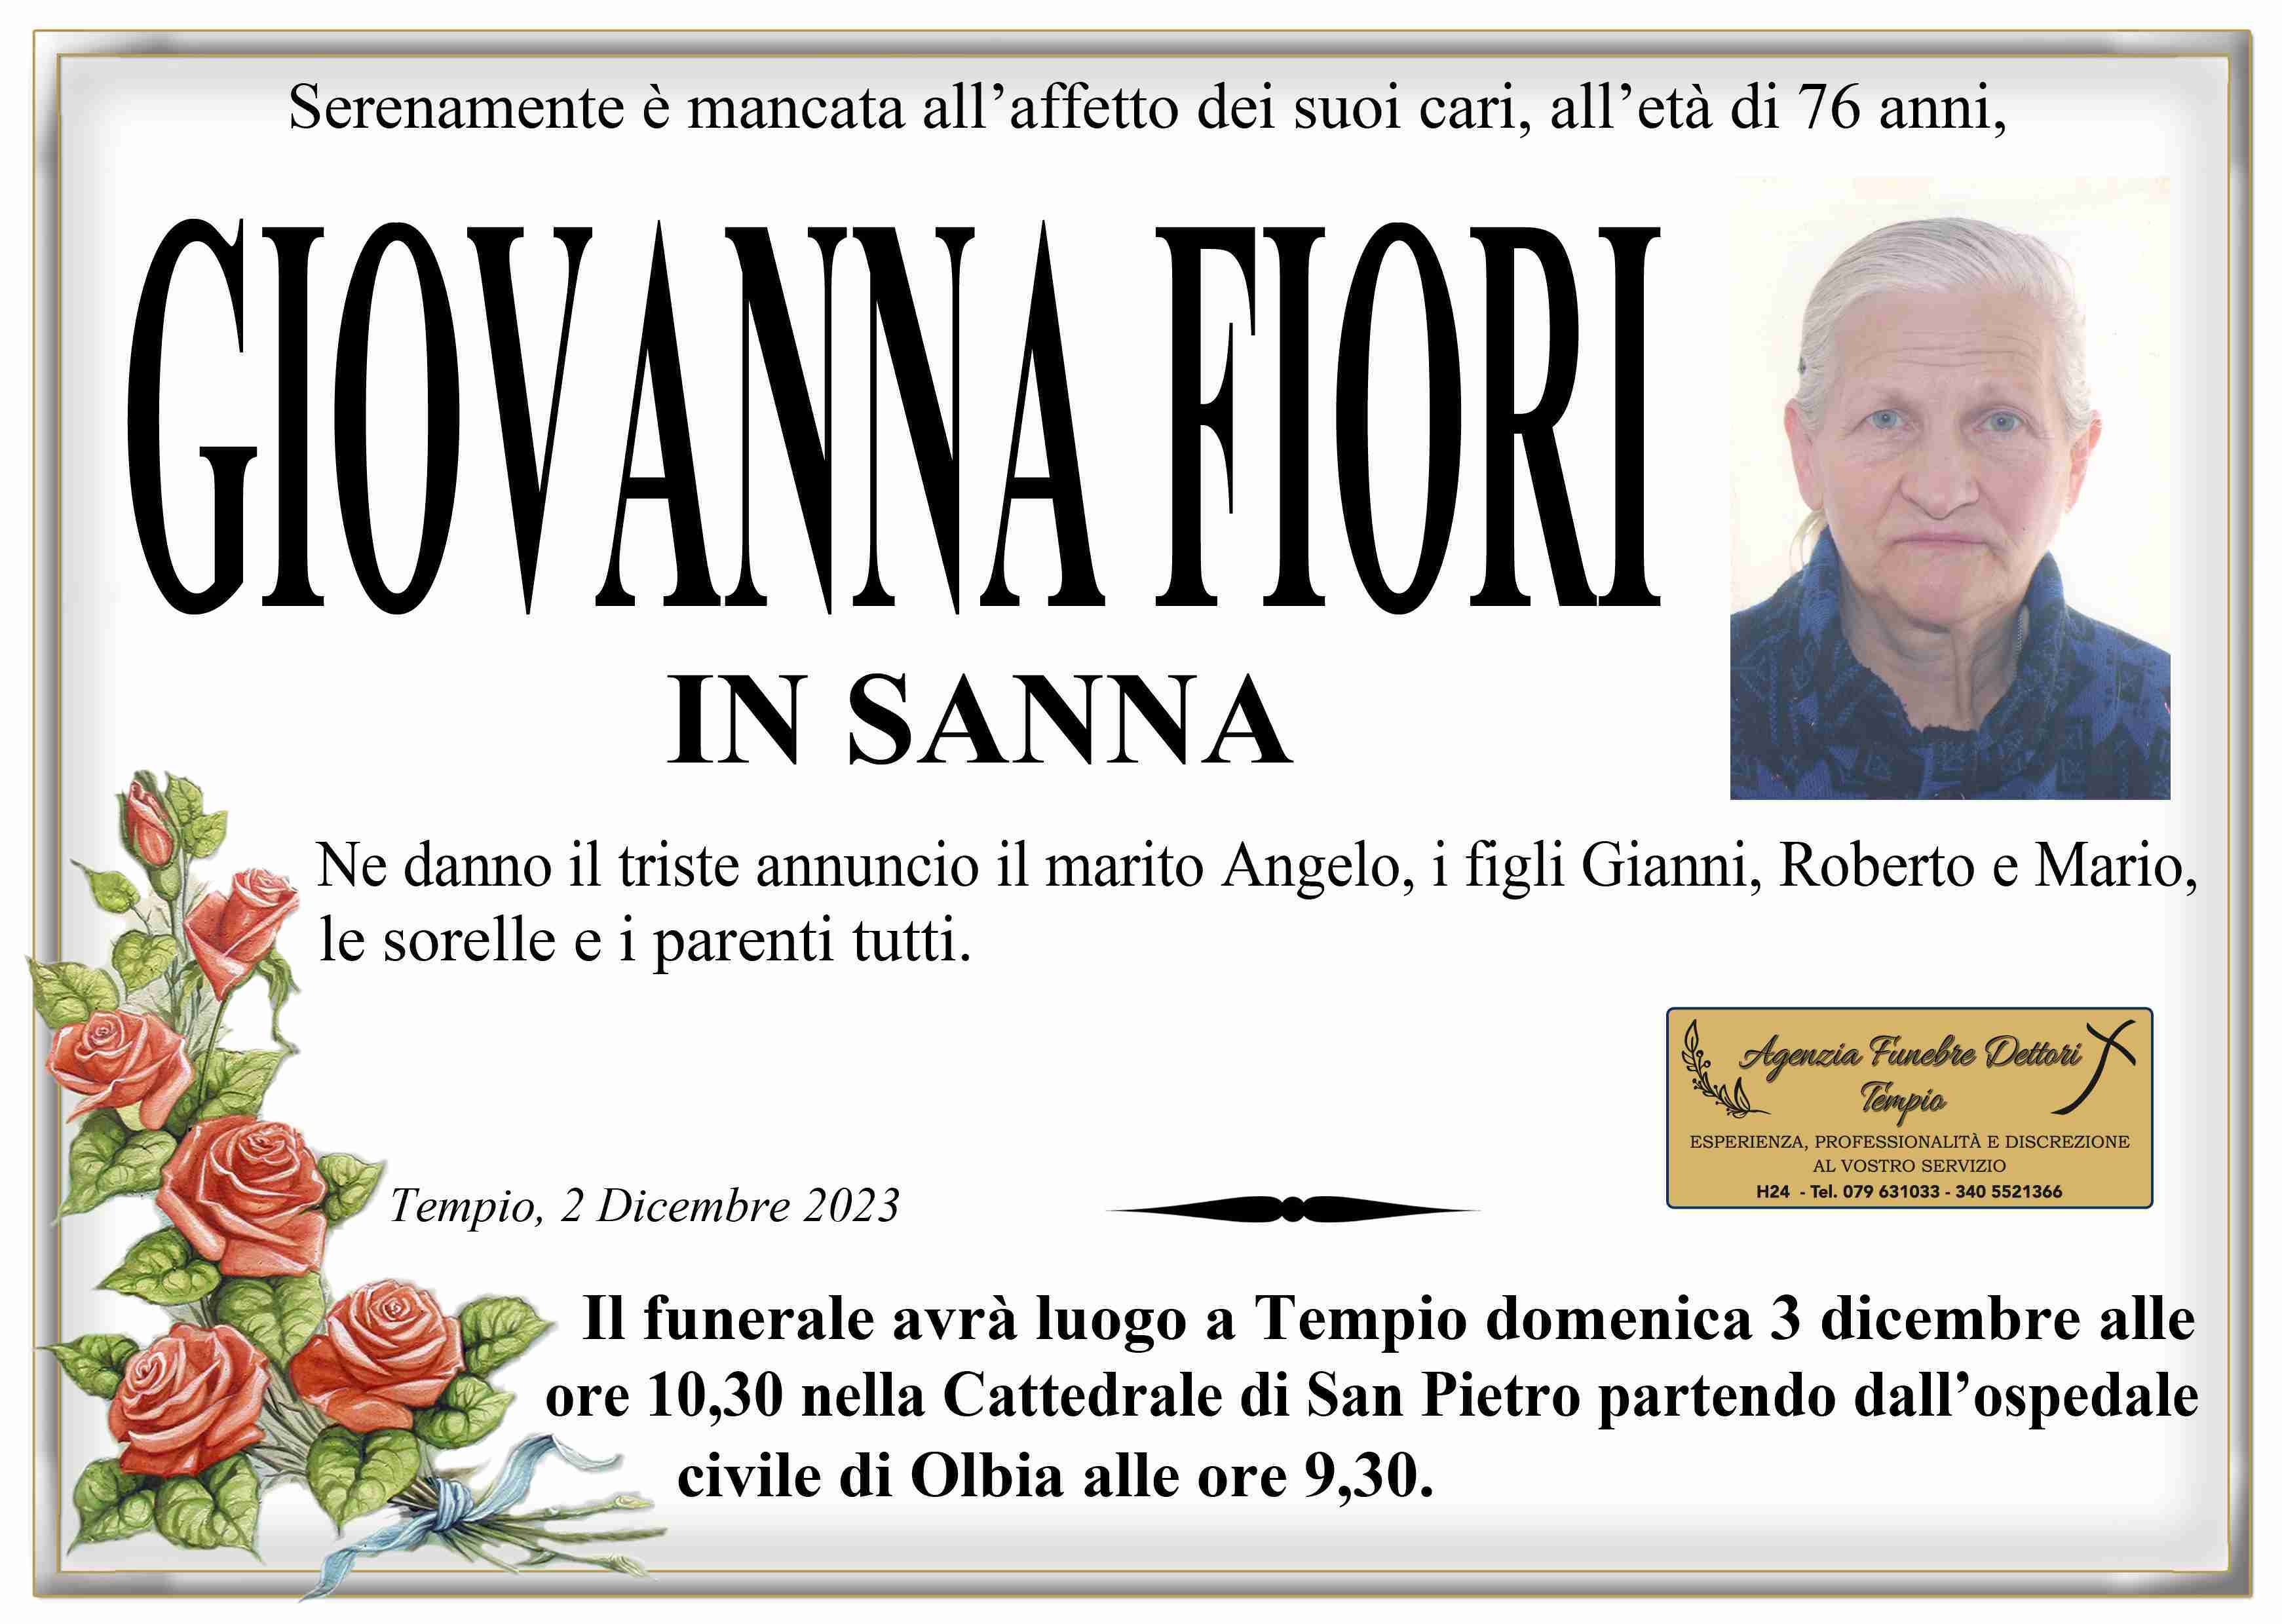 Giovanna Fiori